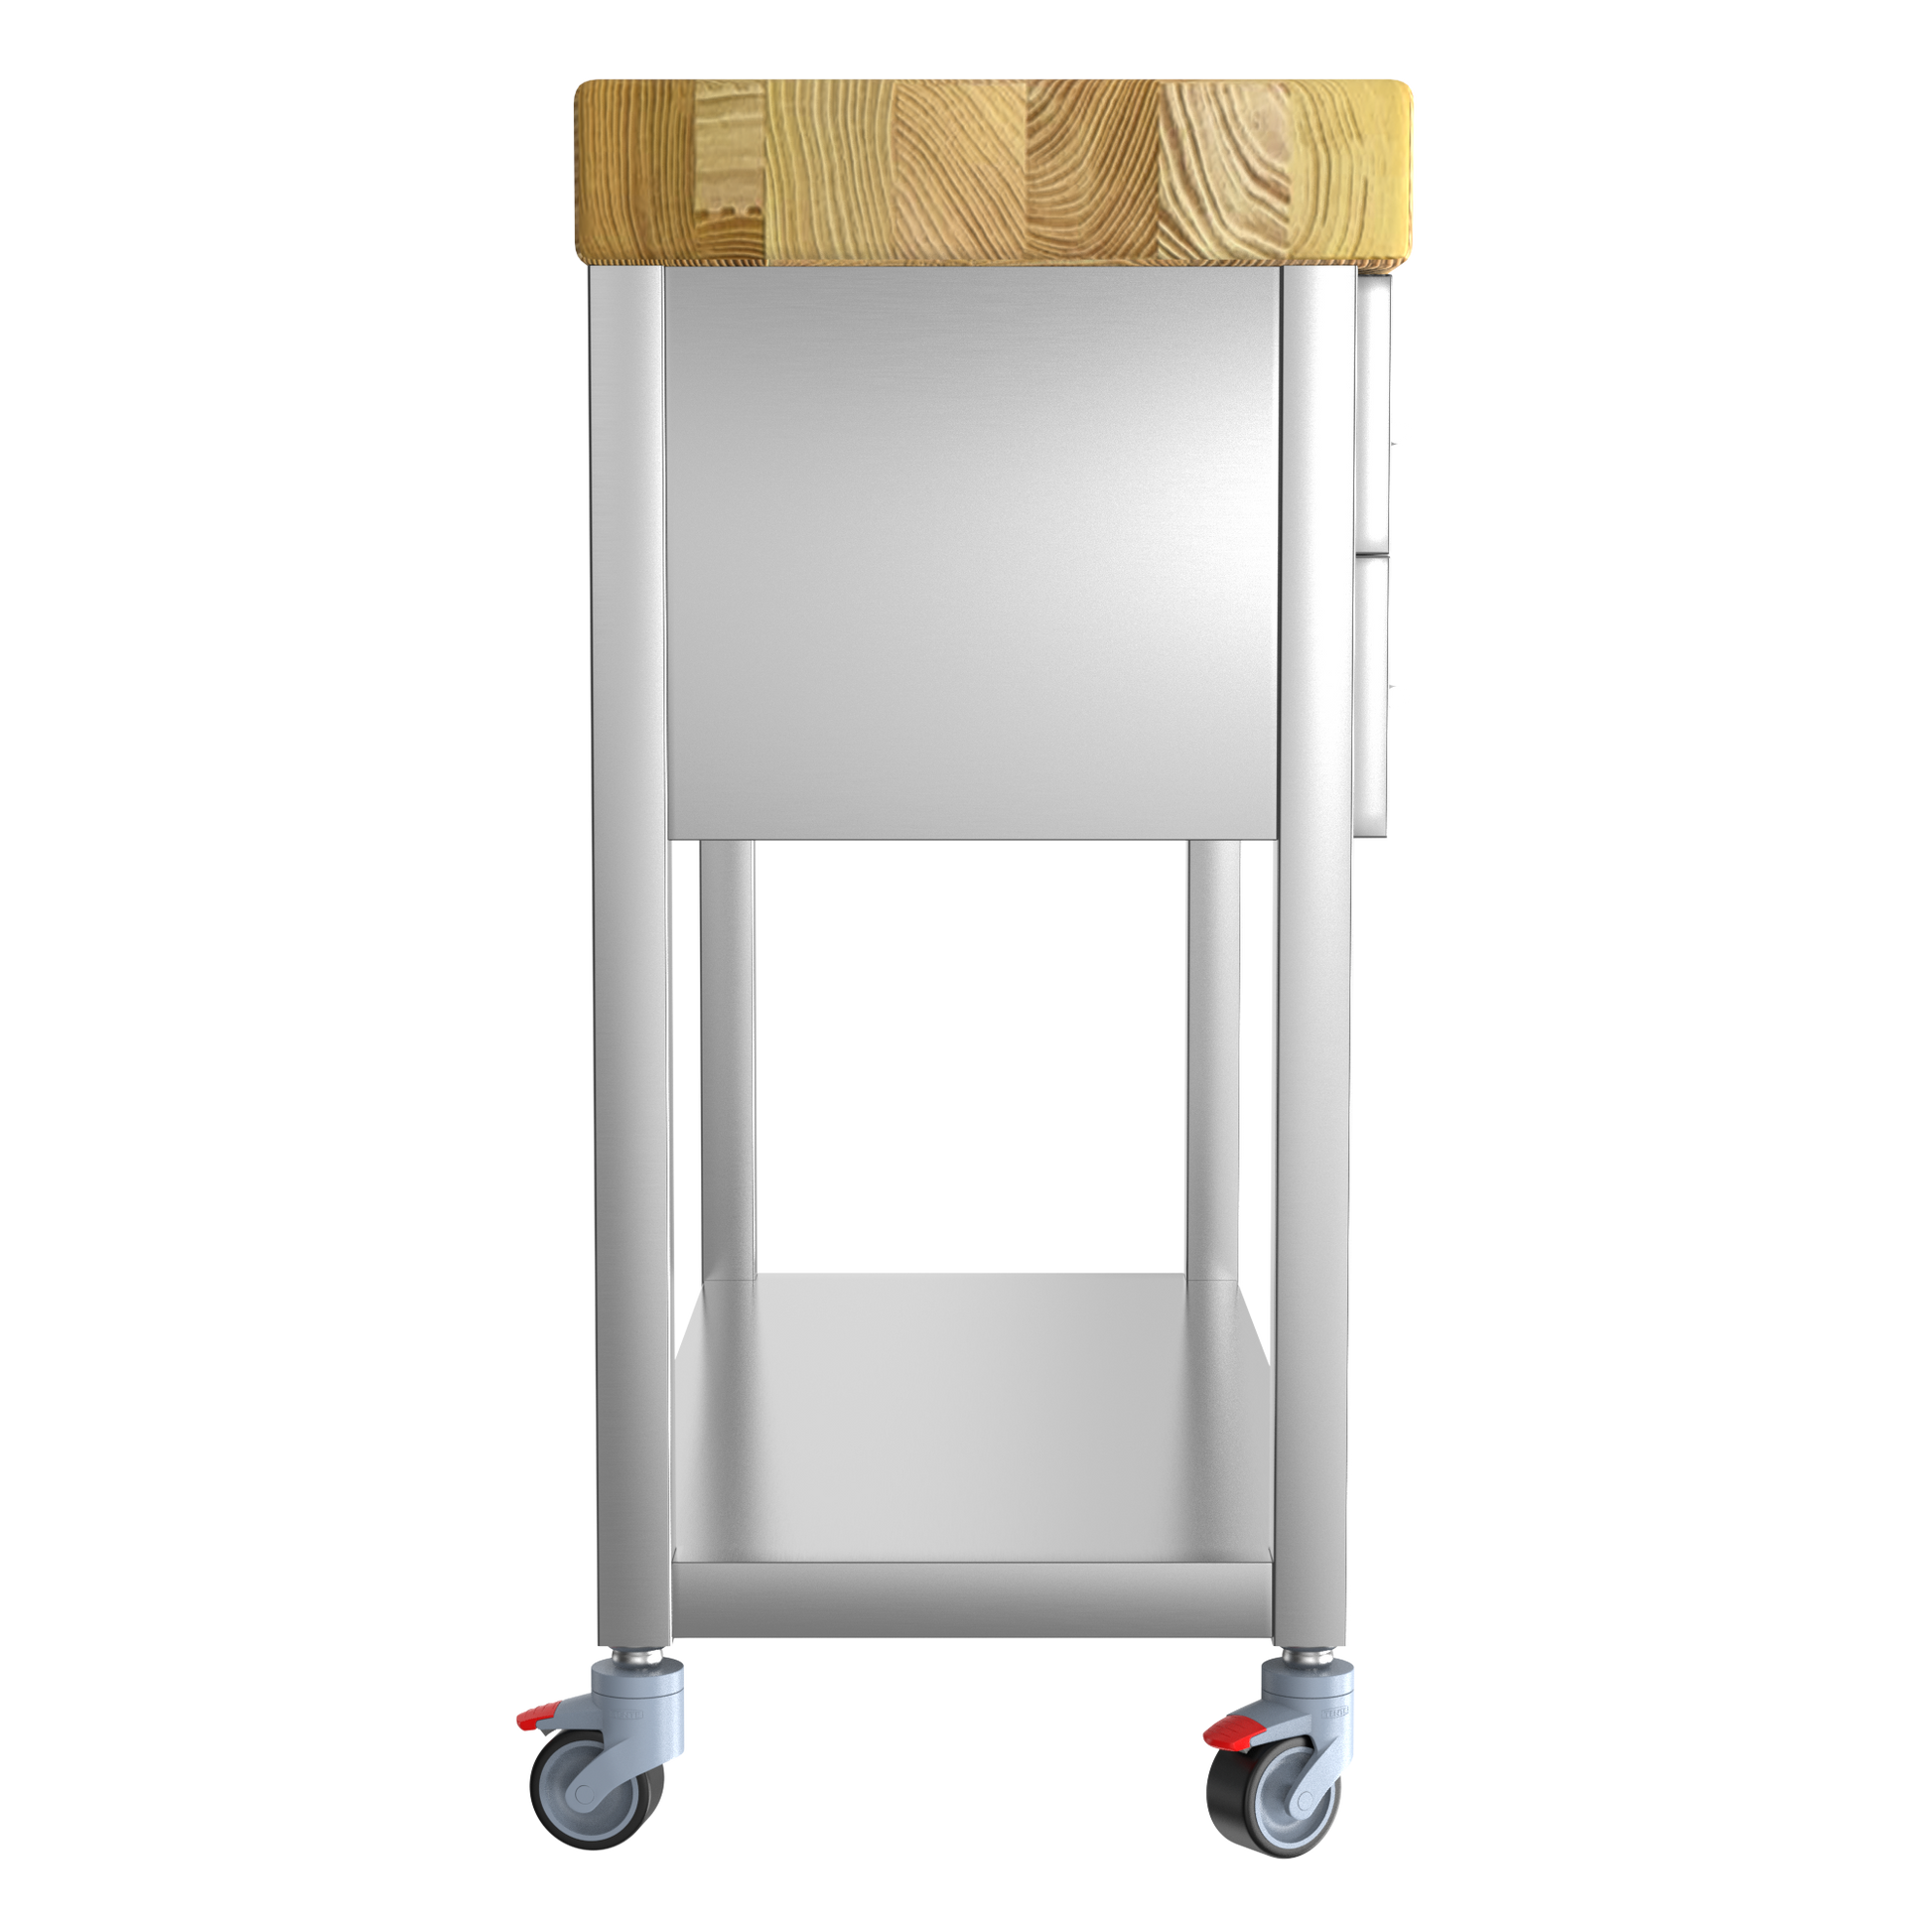 Keukentrolley industrieel met houten hakblok op wielen met frame van RVS